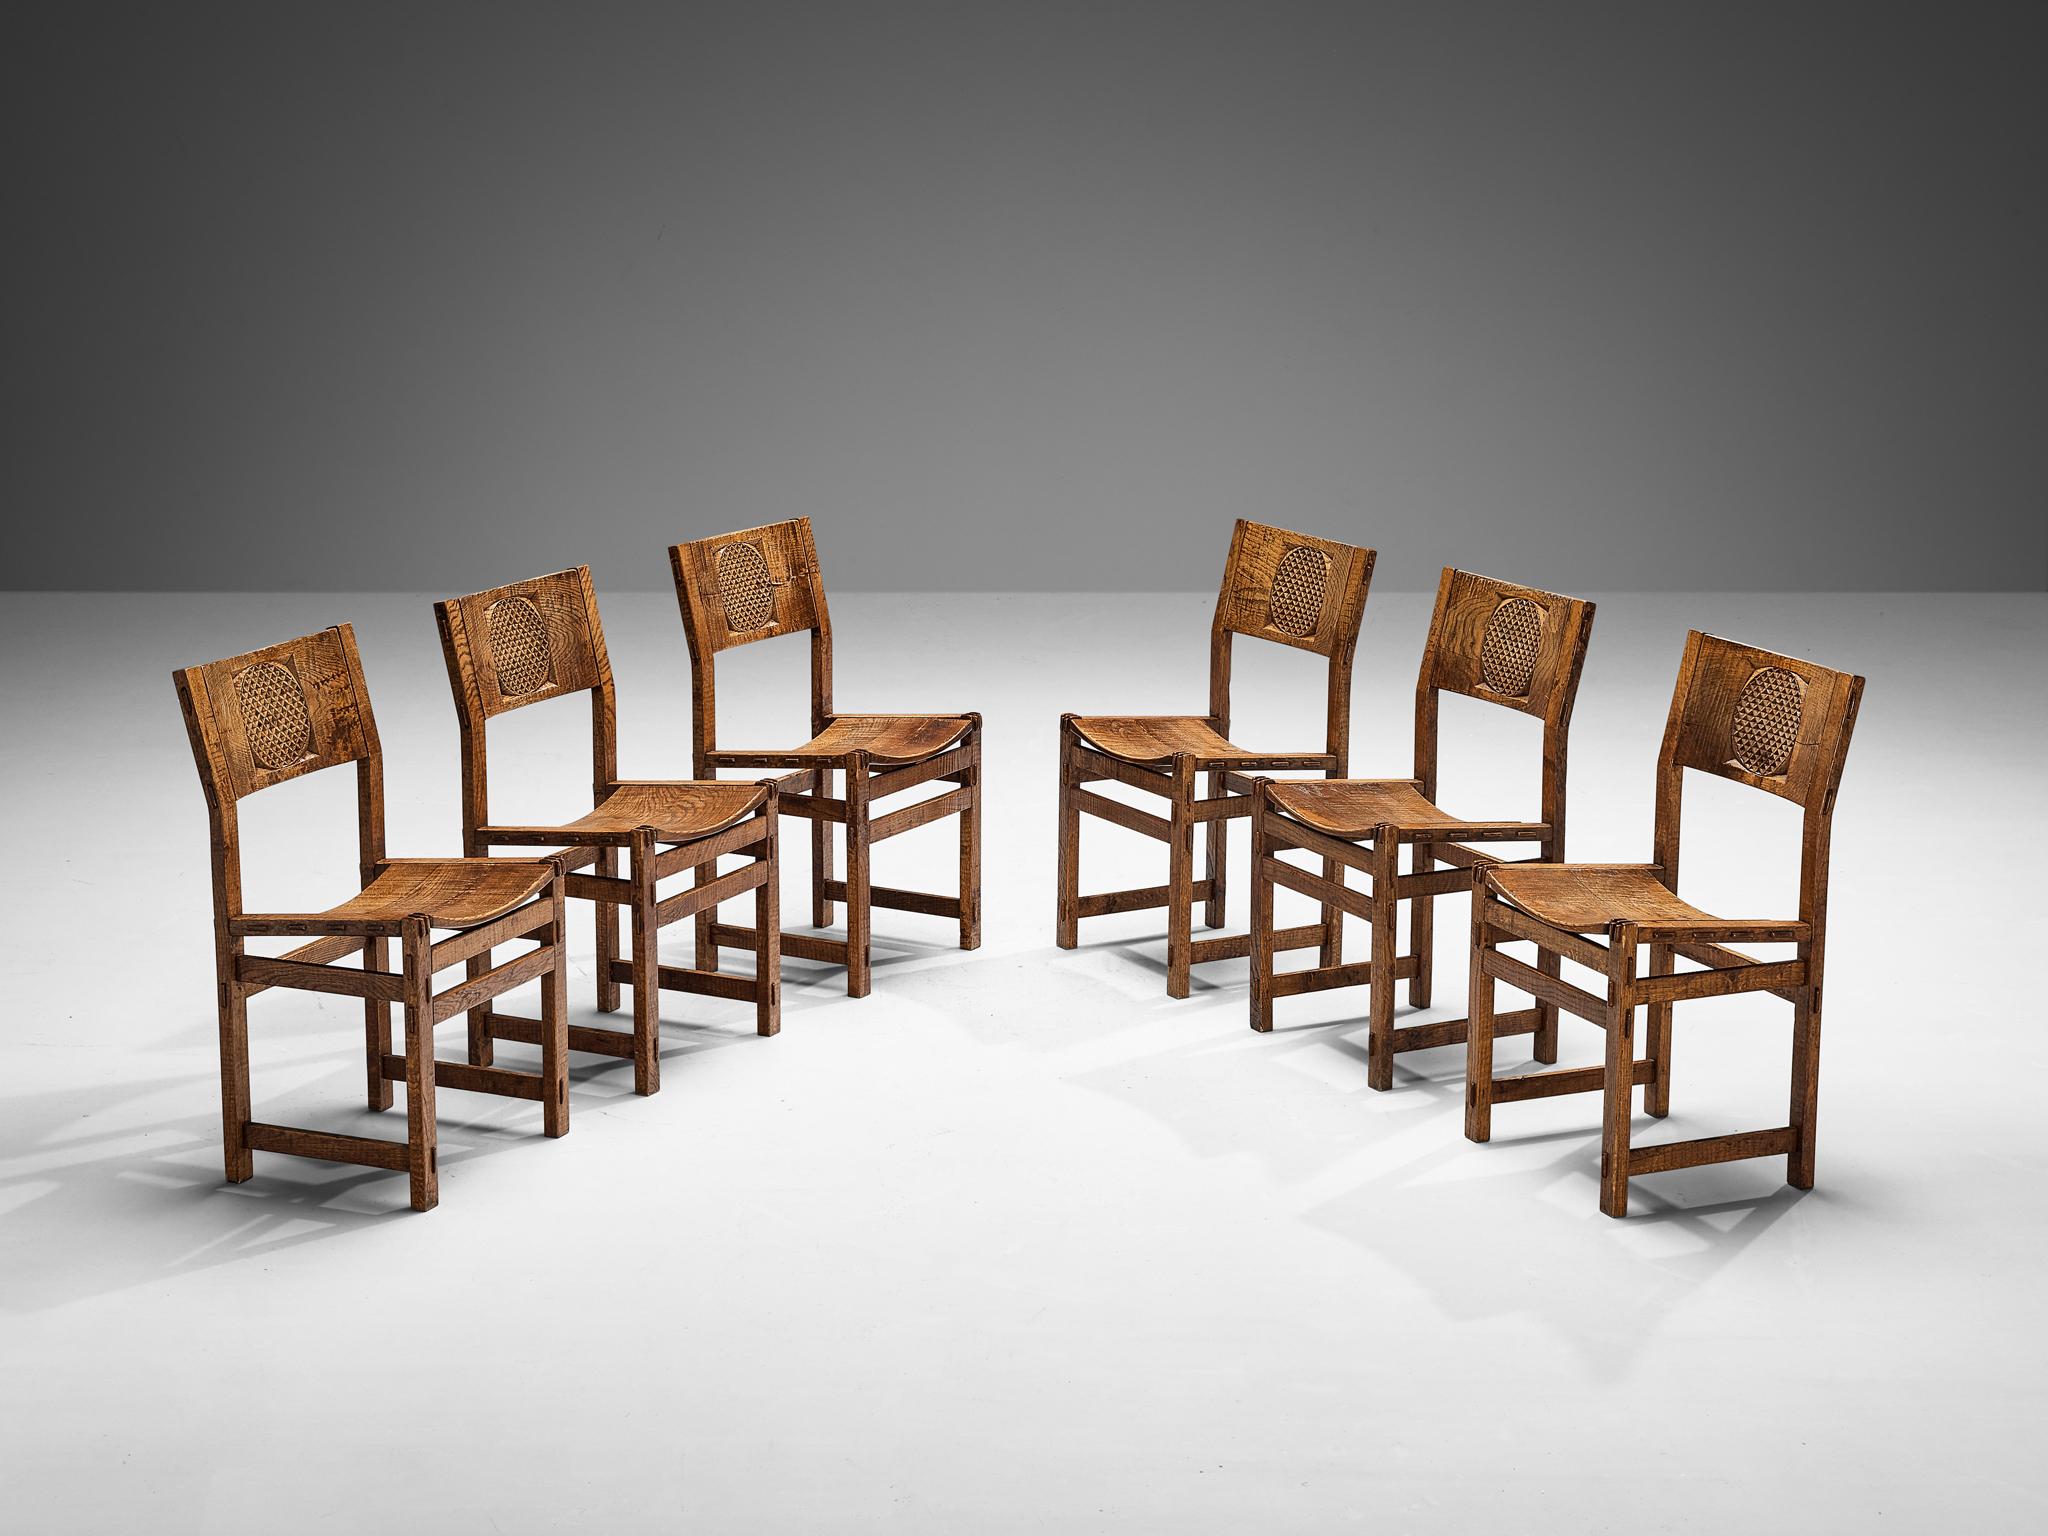 Giuseppe Rivadossi pour Officina Rivadossi, ensemble de six chaises de salle à manger, chêne, Italie, années 1970

Un ensemble exceptionnel de chaises du sculpteur et designer italien Giuseppe Rivadossi. Les chaises sont architecturalement